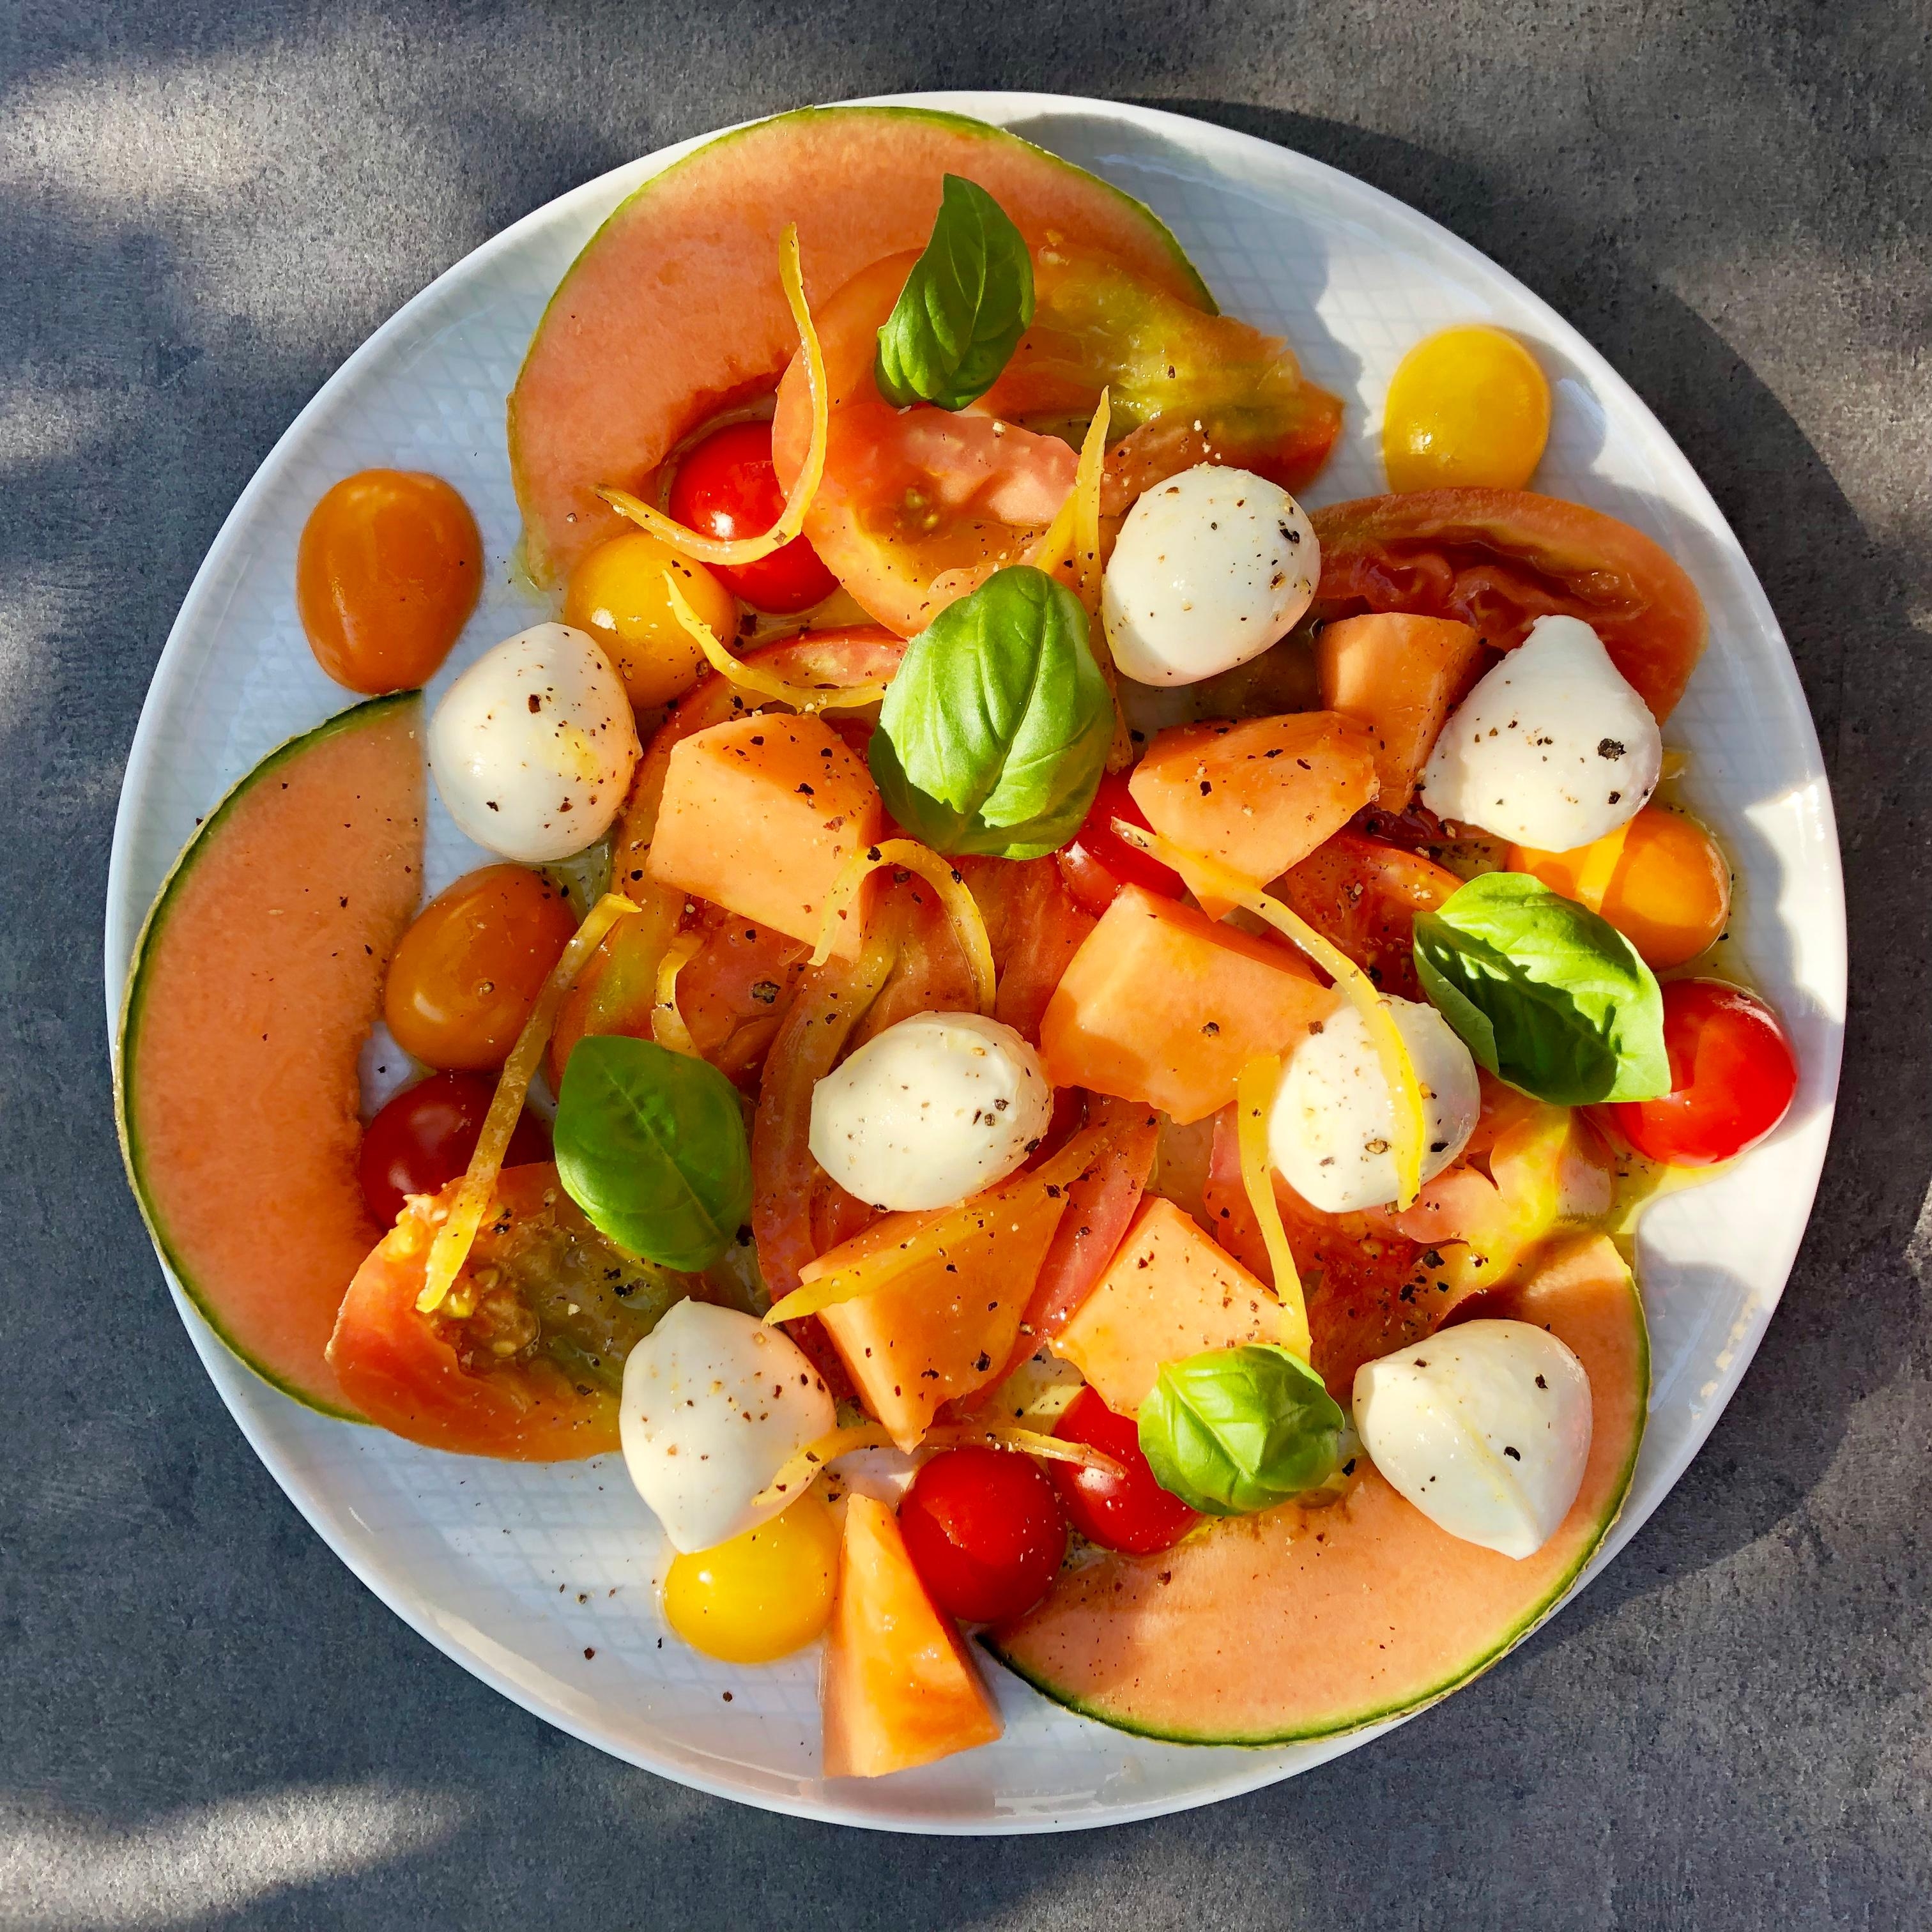 Cantaloupe-Melone mit Tomaten-Allerlei, Büffelmozzarella und einer Zitronen-Vanille-Vinaigrette 😋 #salat #bowl #lecker